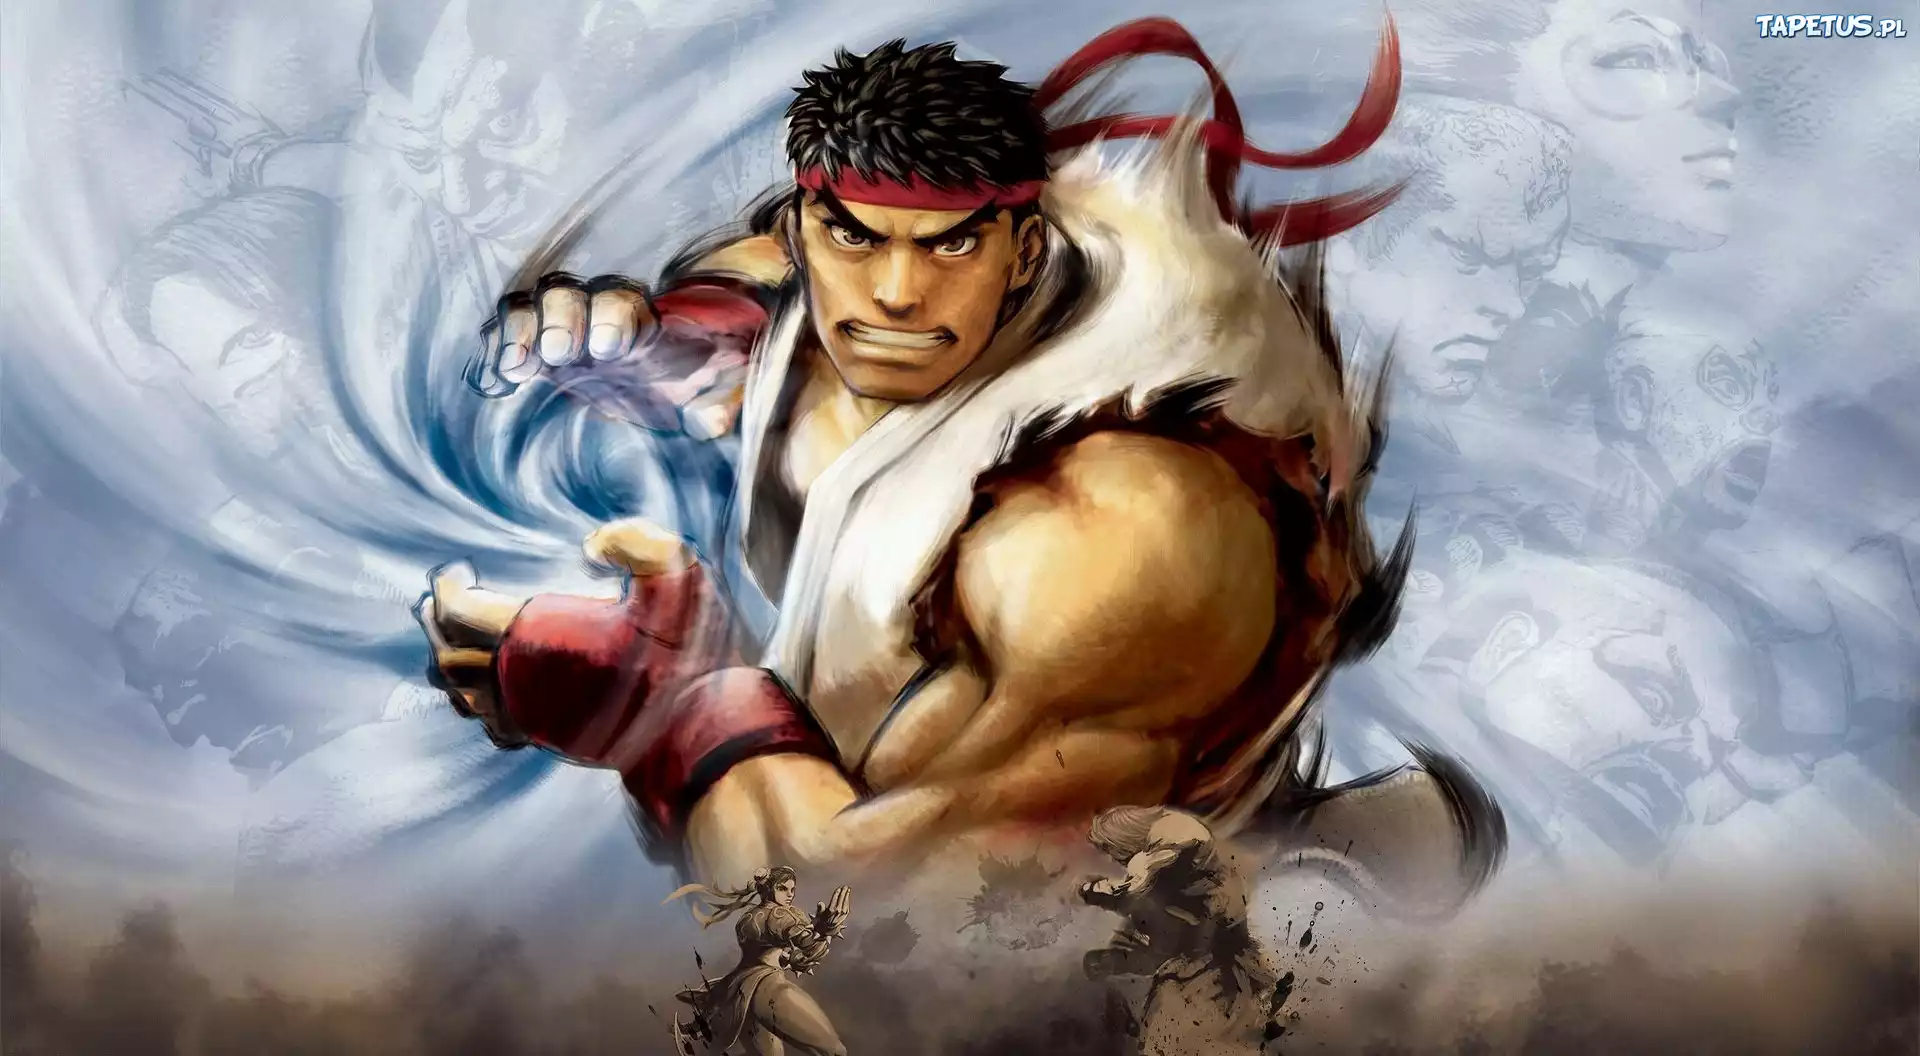 Satsui no Hado, Street Fighter Wiki